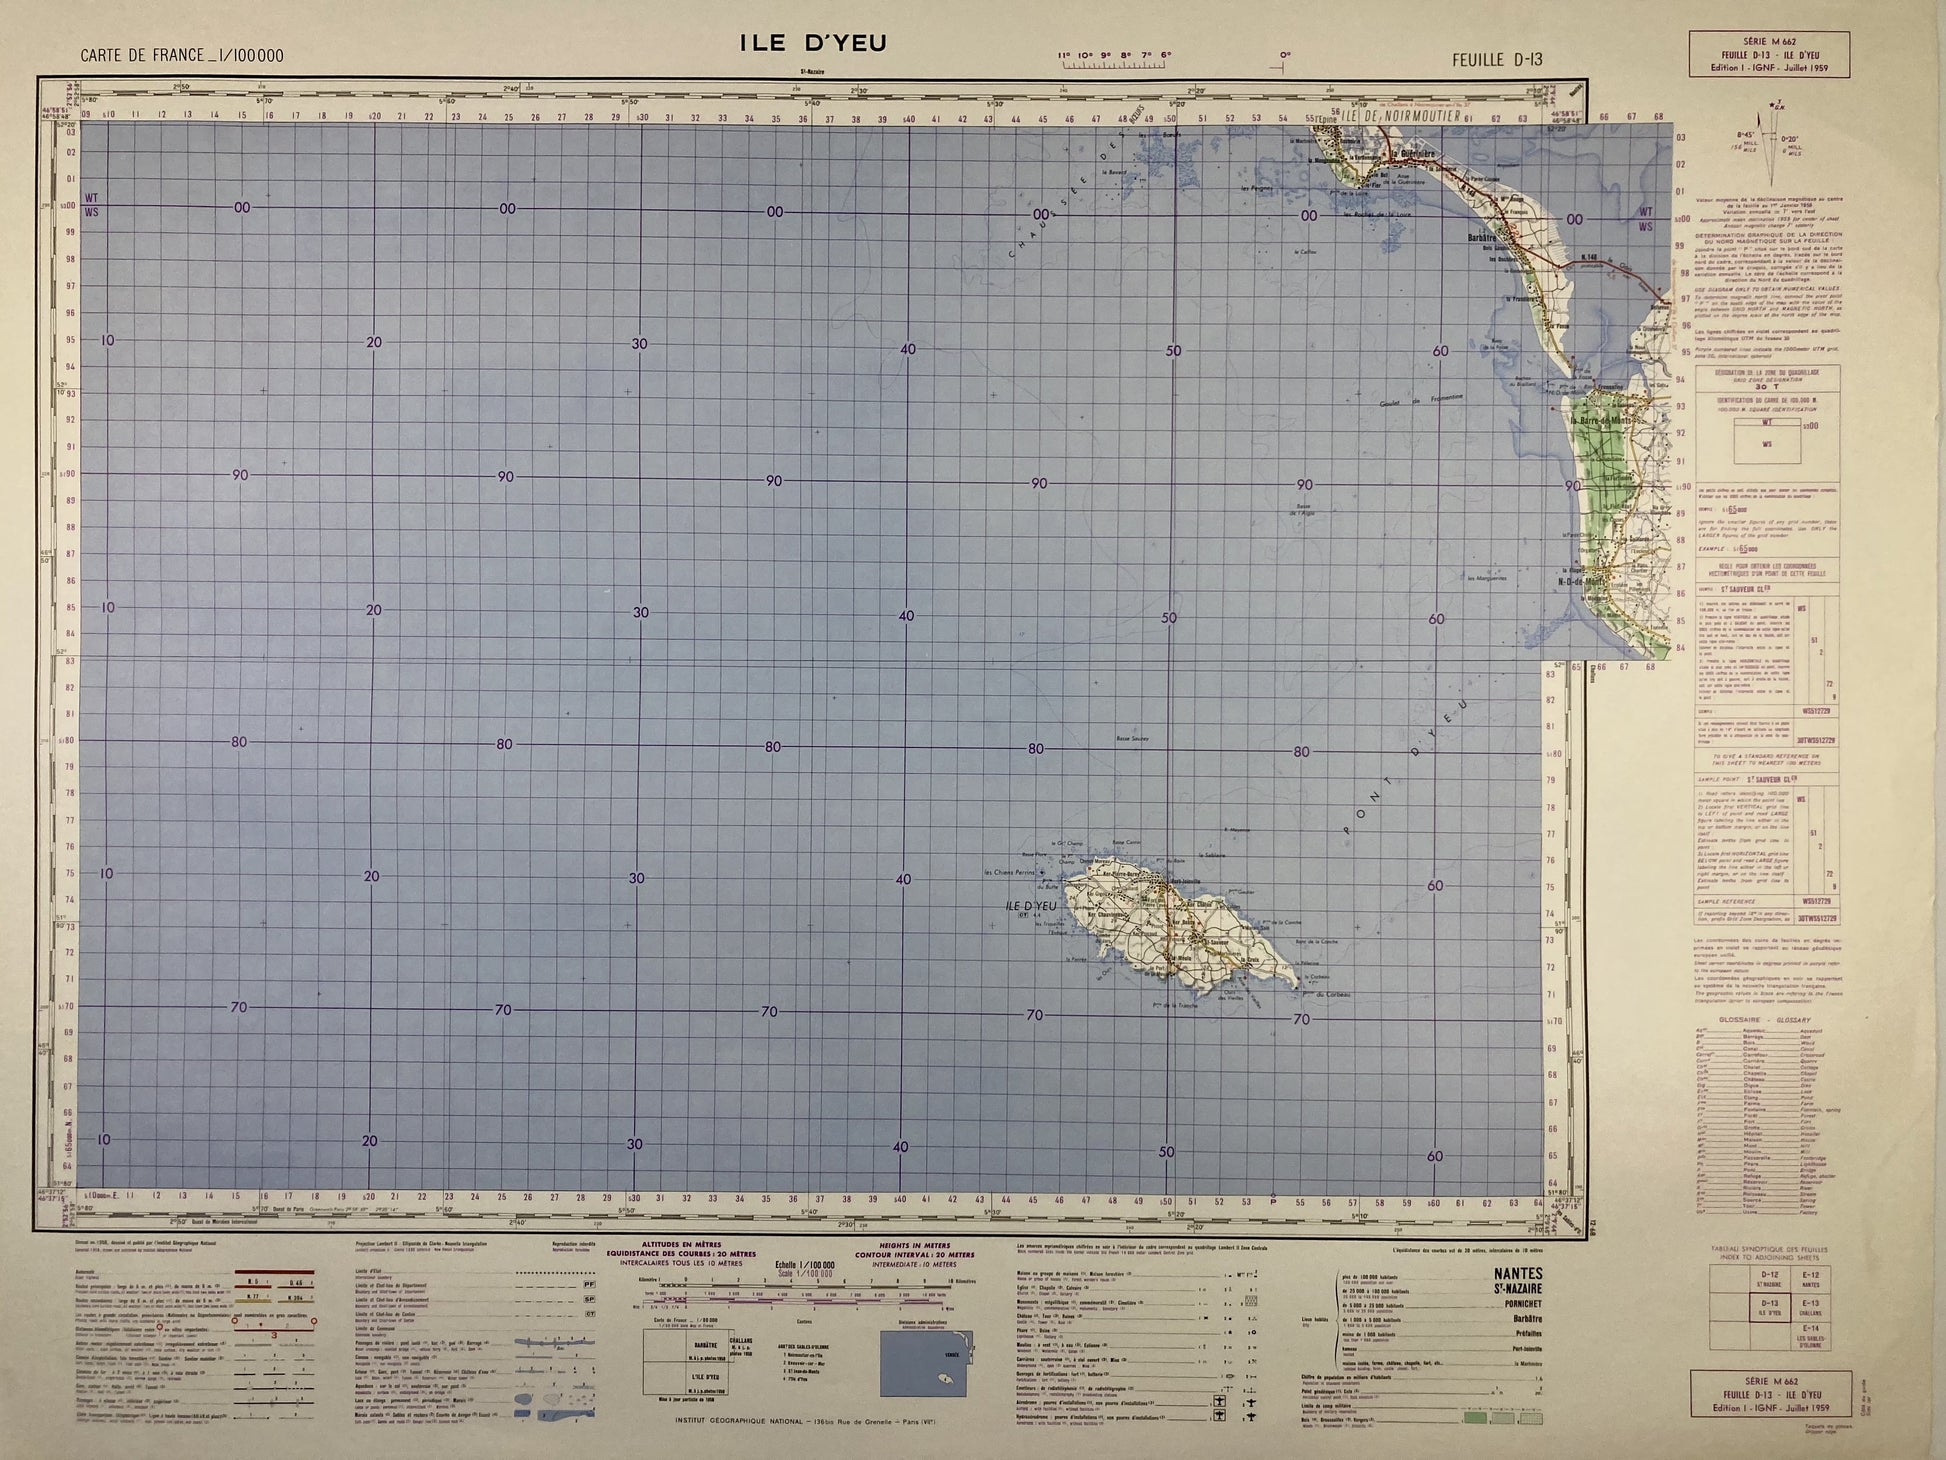 Carte IGN ancienne de l'Île d'Yeu